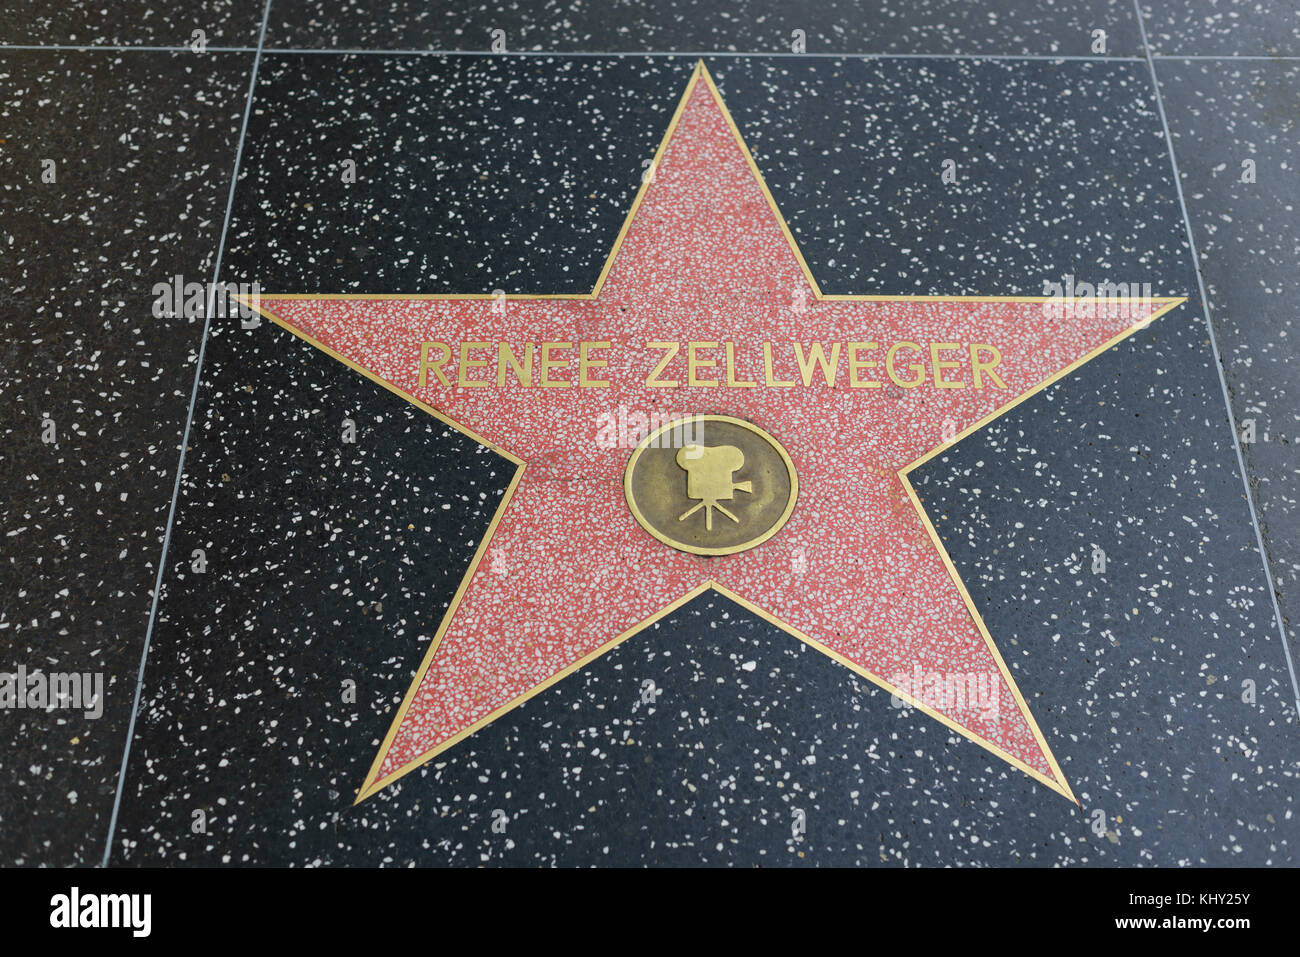 HOLLYWOOD, CA - DICEMBRE 06: Renee Zellweger stella sulla Hollywood Walk of Fame a Hollywood, California il 6 dicembre 2016. Foto Stock